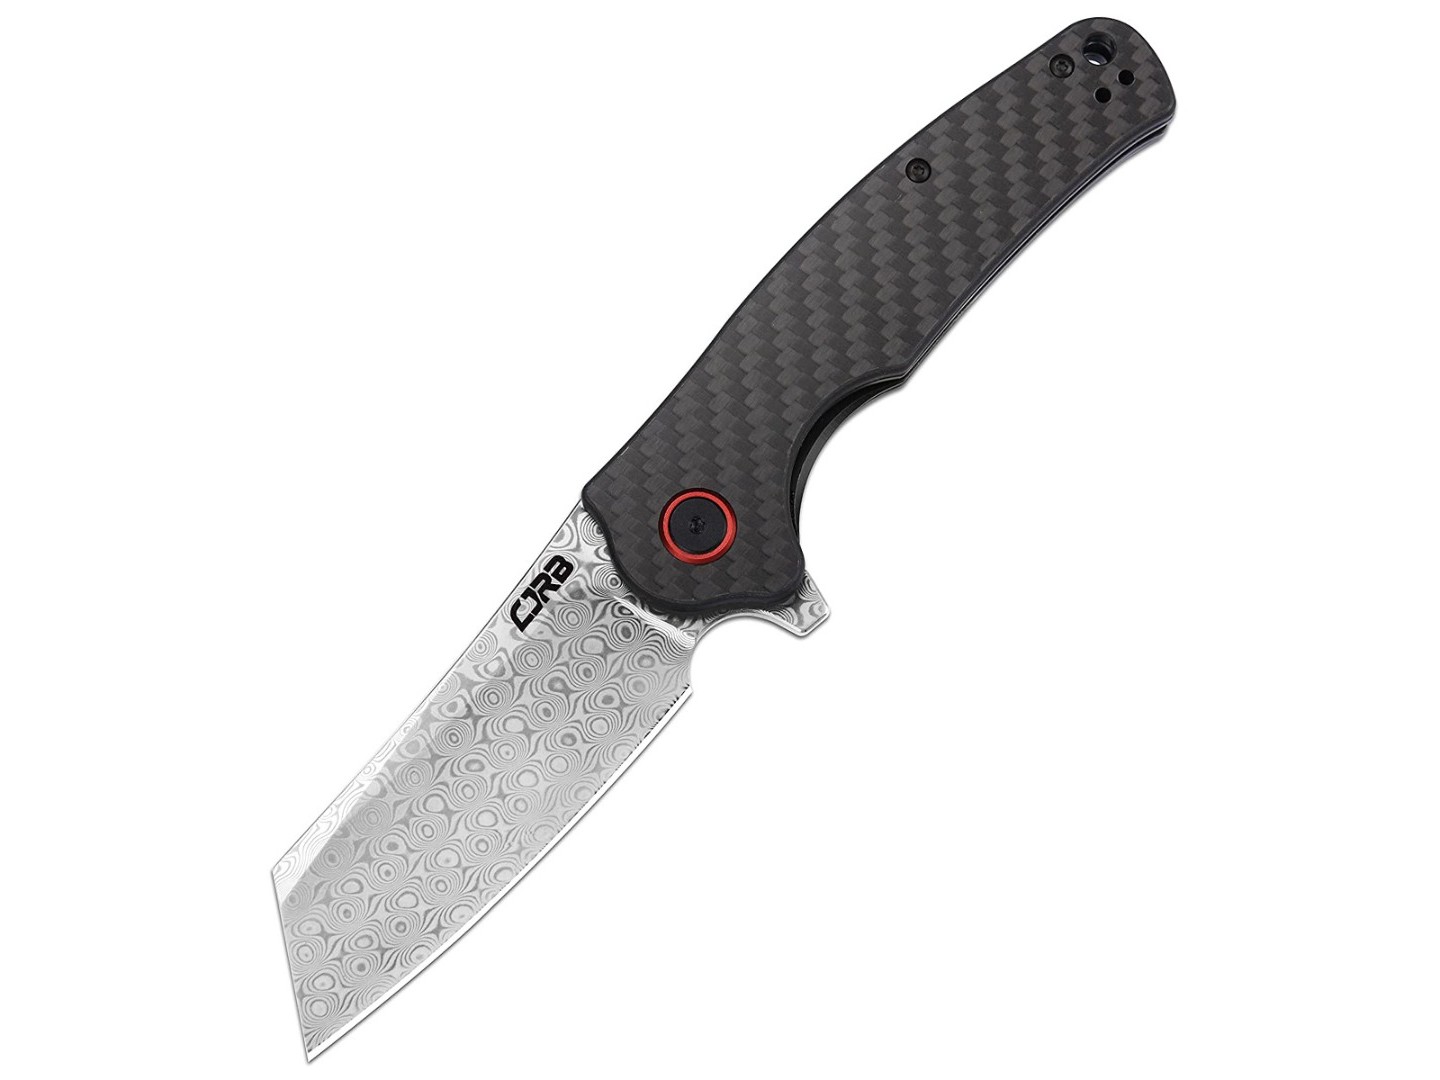 Нож CJRB Crag J1904D-CF сталь Damascus, рукоять Carbon fiber